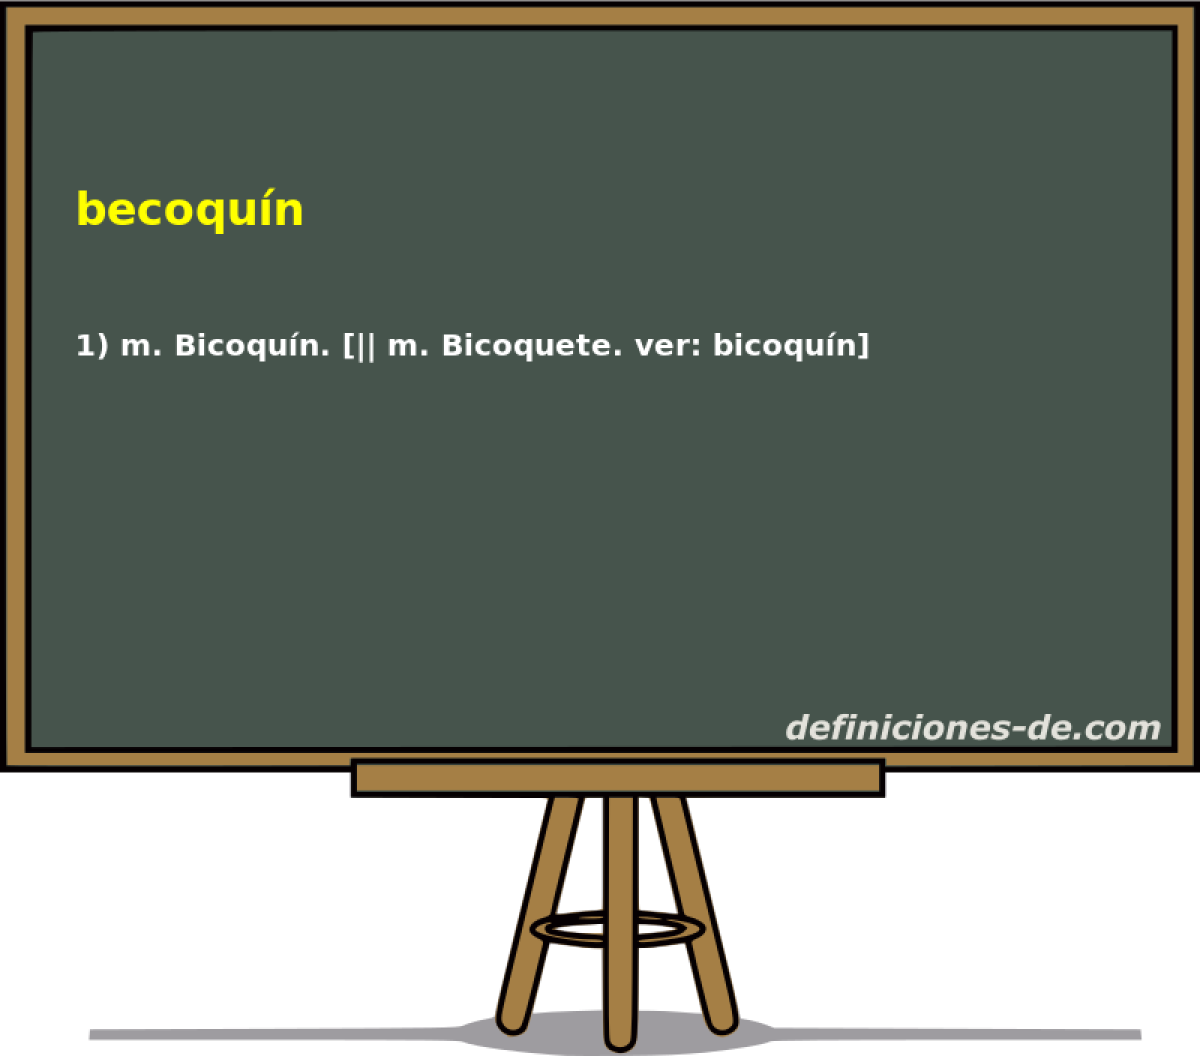 becoqun 